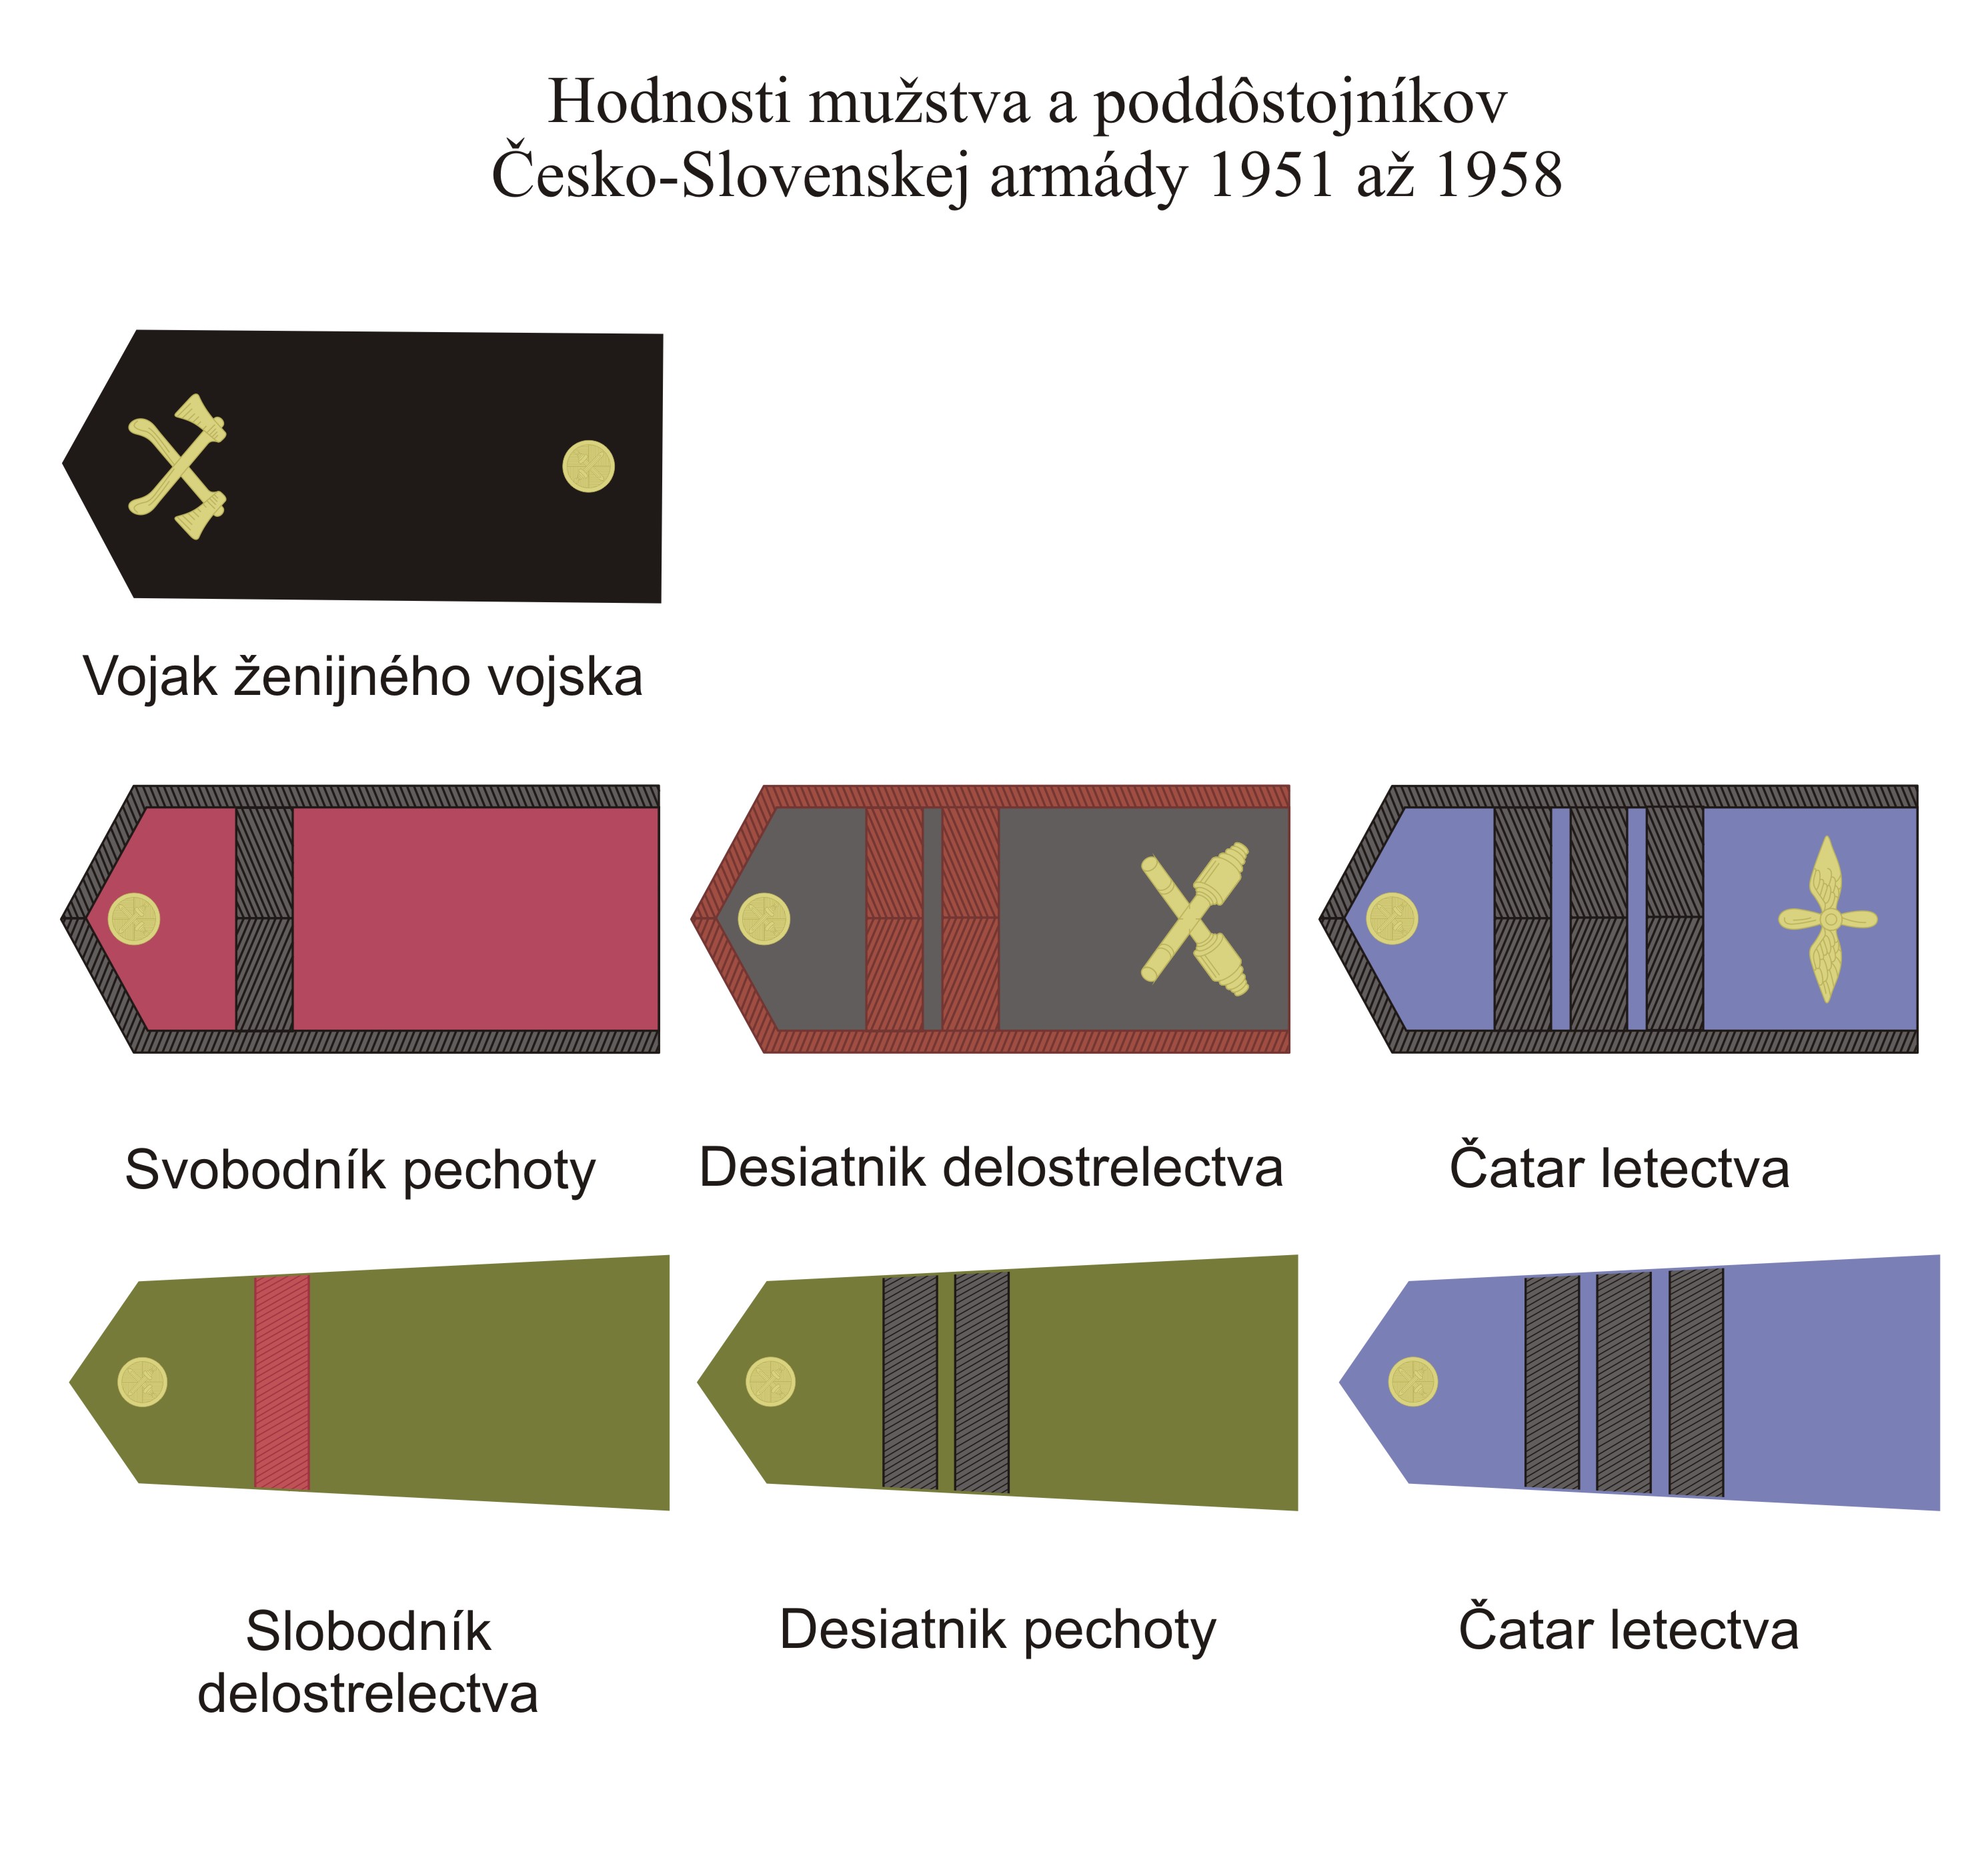 Vojensk hodnosti mustva a poddostojnkov SA 1951-58